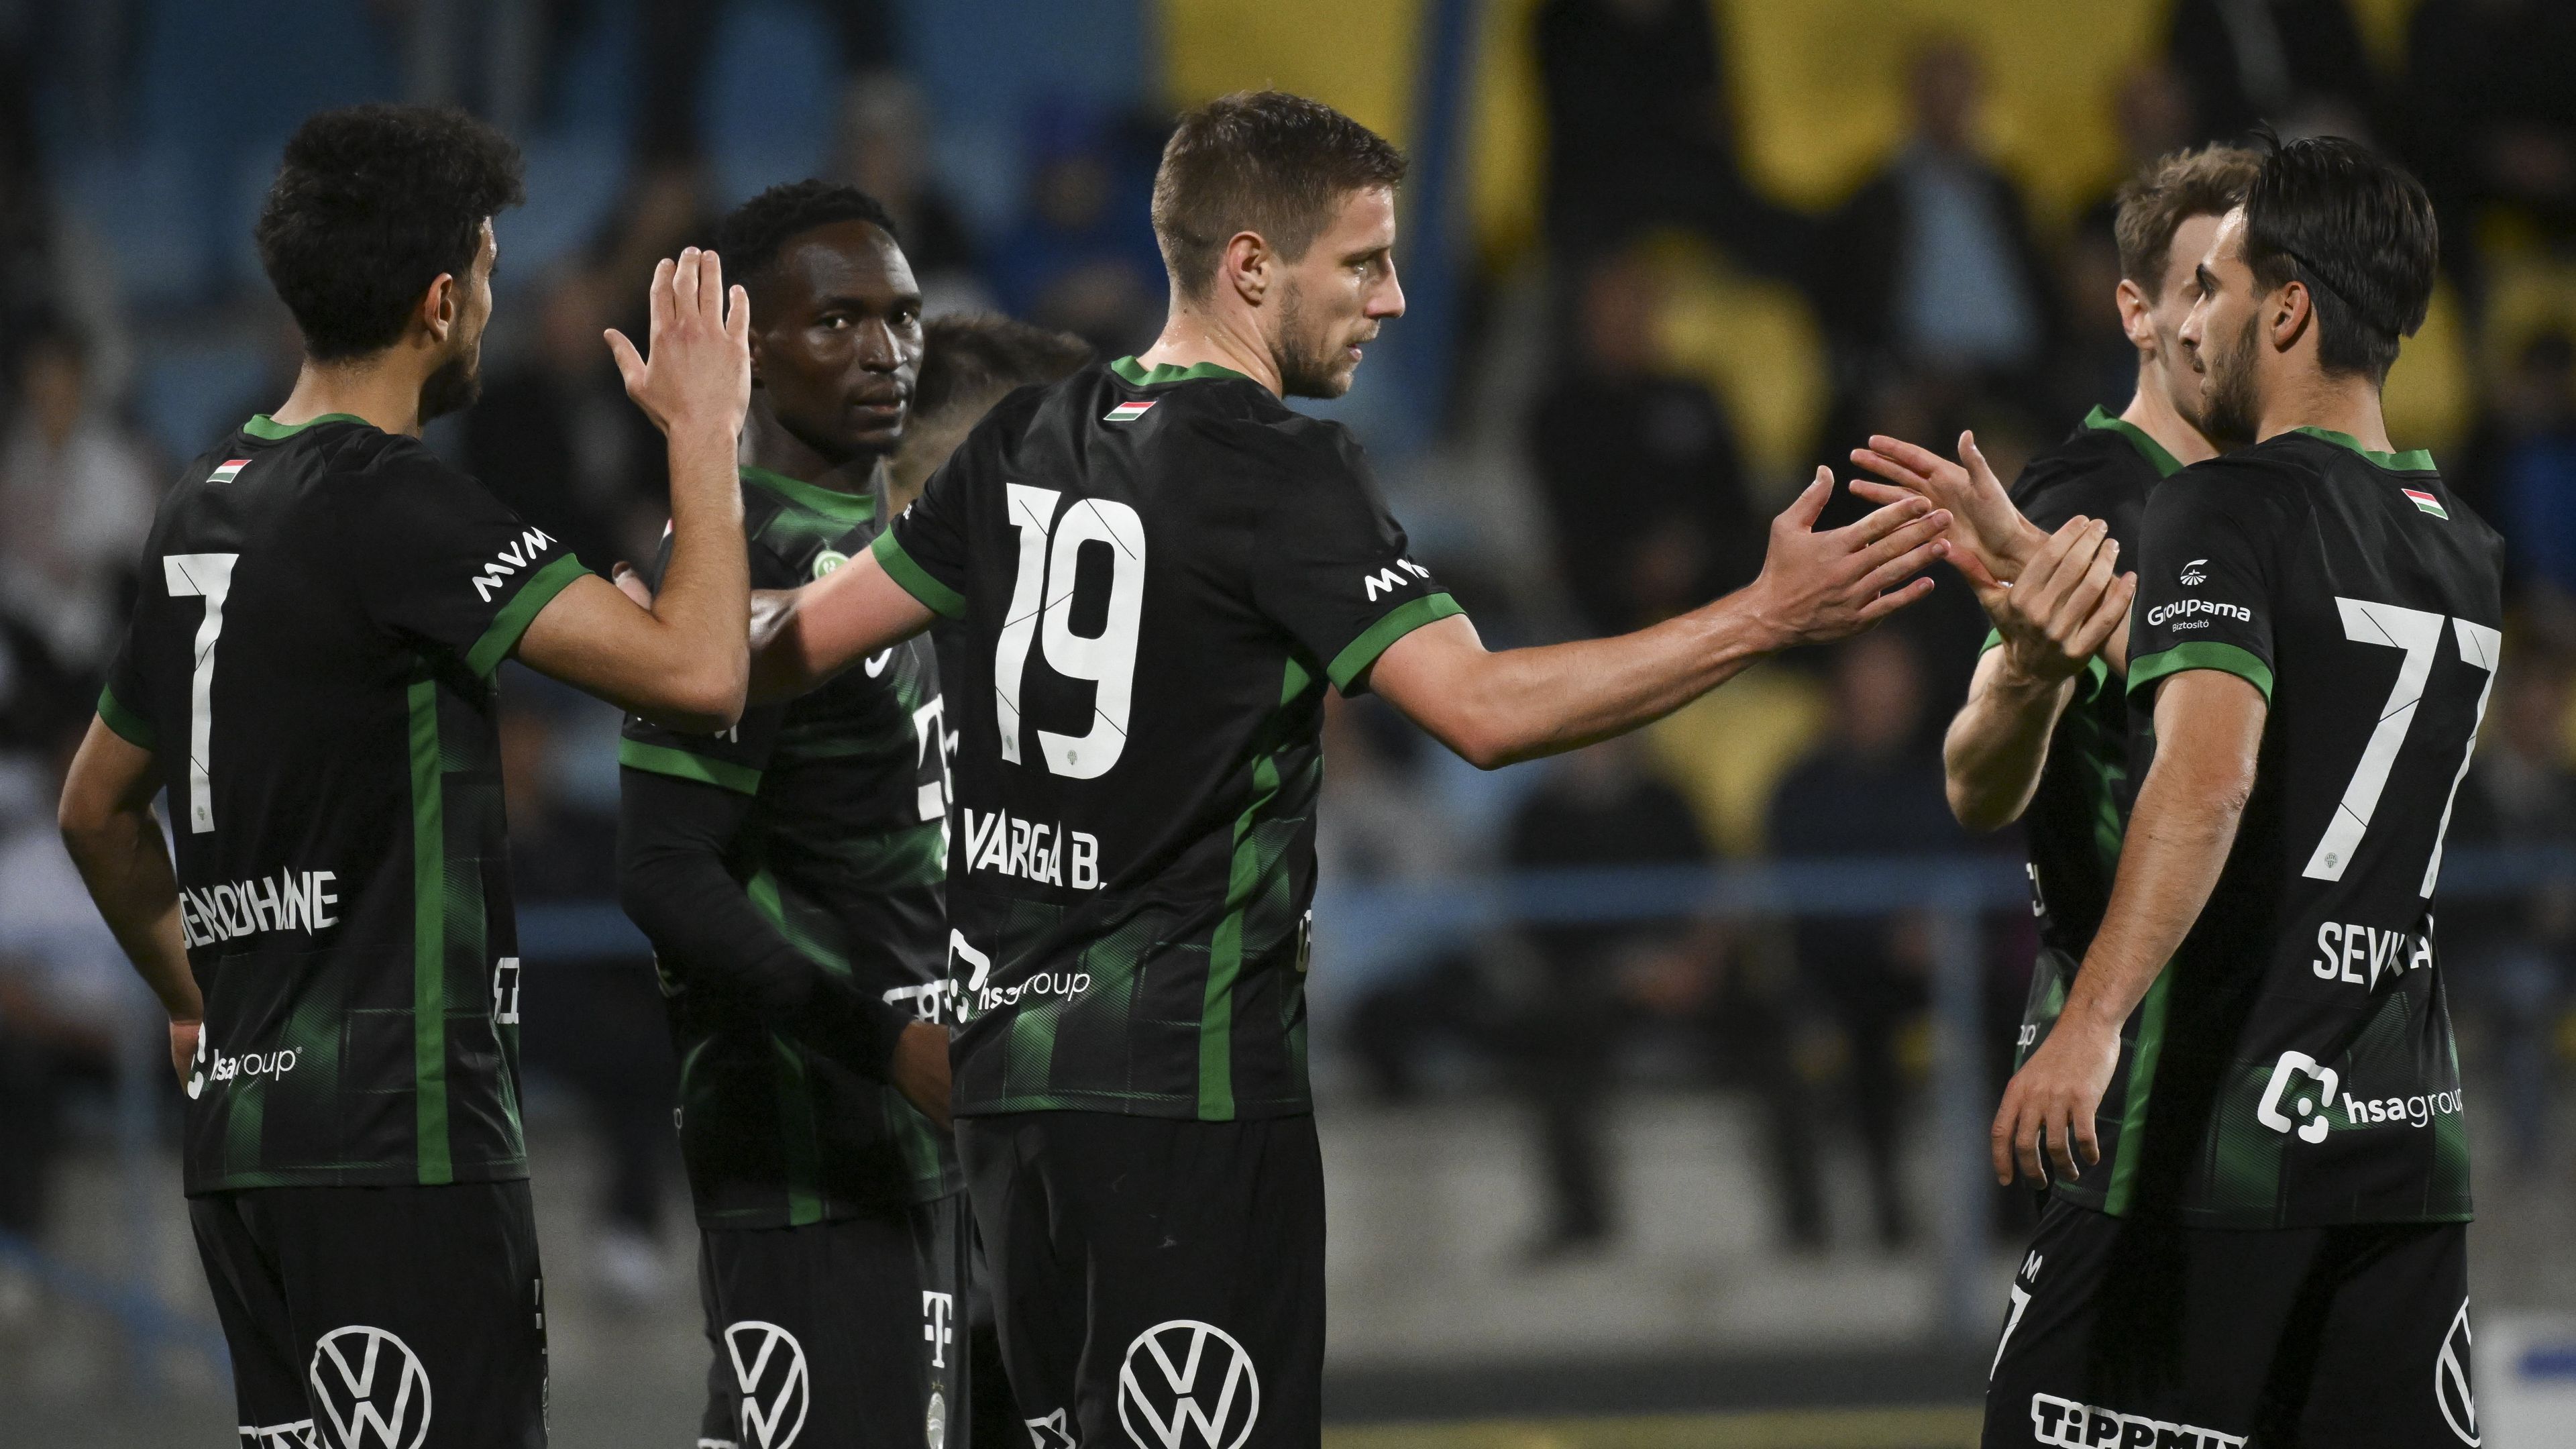 Varga Barnabás elégedetten pacsizhatott társaival a Mezőkövesd elleni 3–0-ás győzelmet követően Fotó: MTI/Czeglédi Zsolt